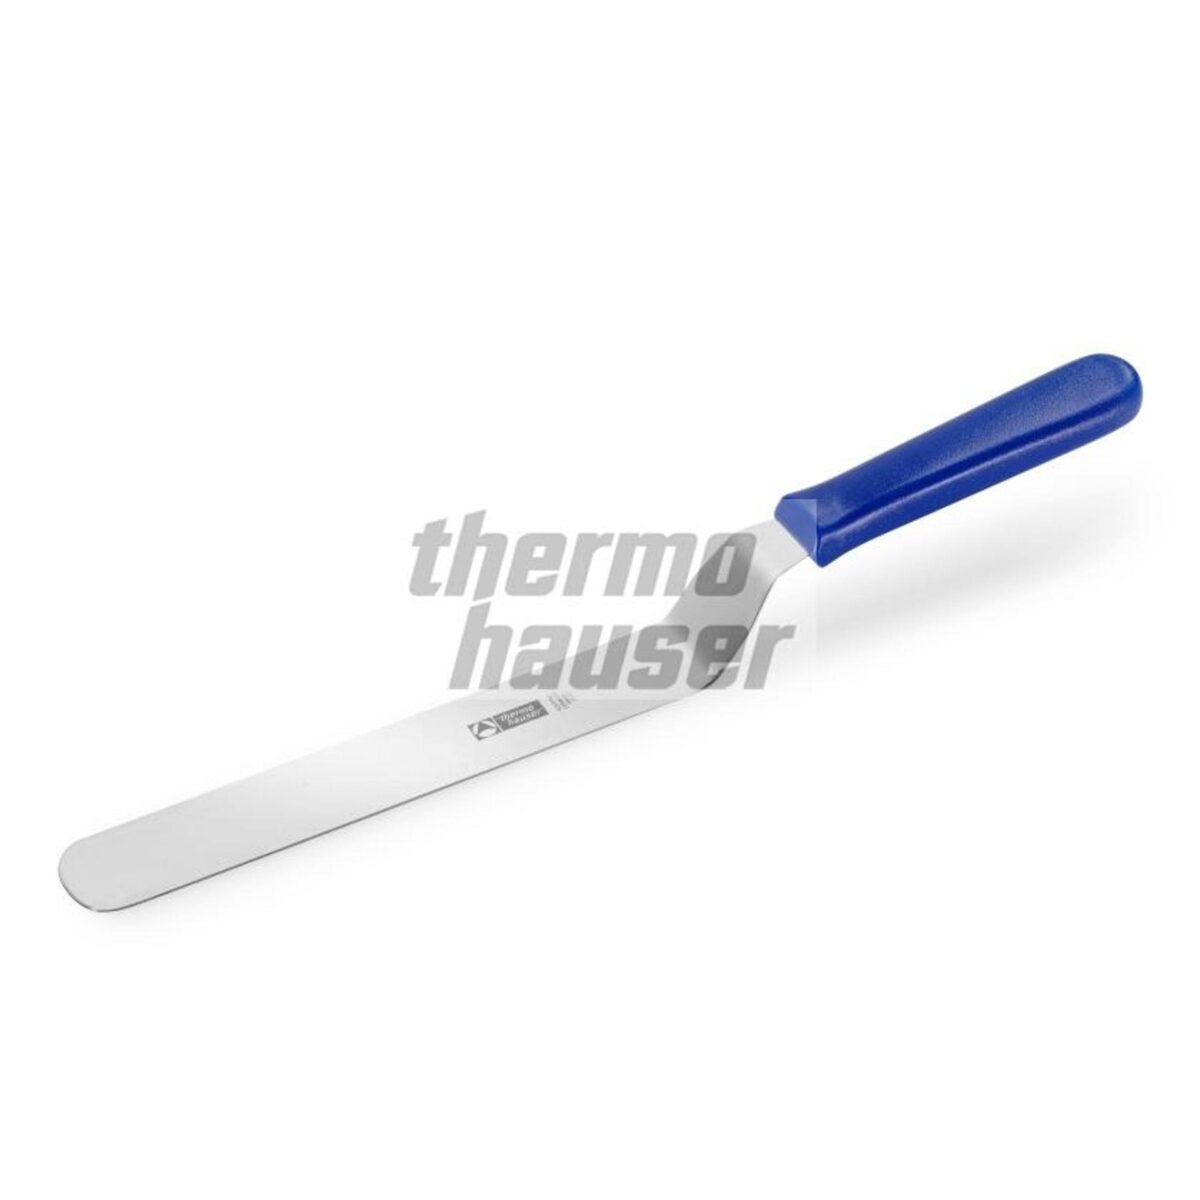 Thermohauser Palet Bıçağı Eğik 10 Cm